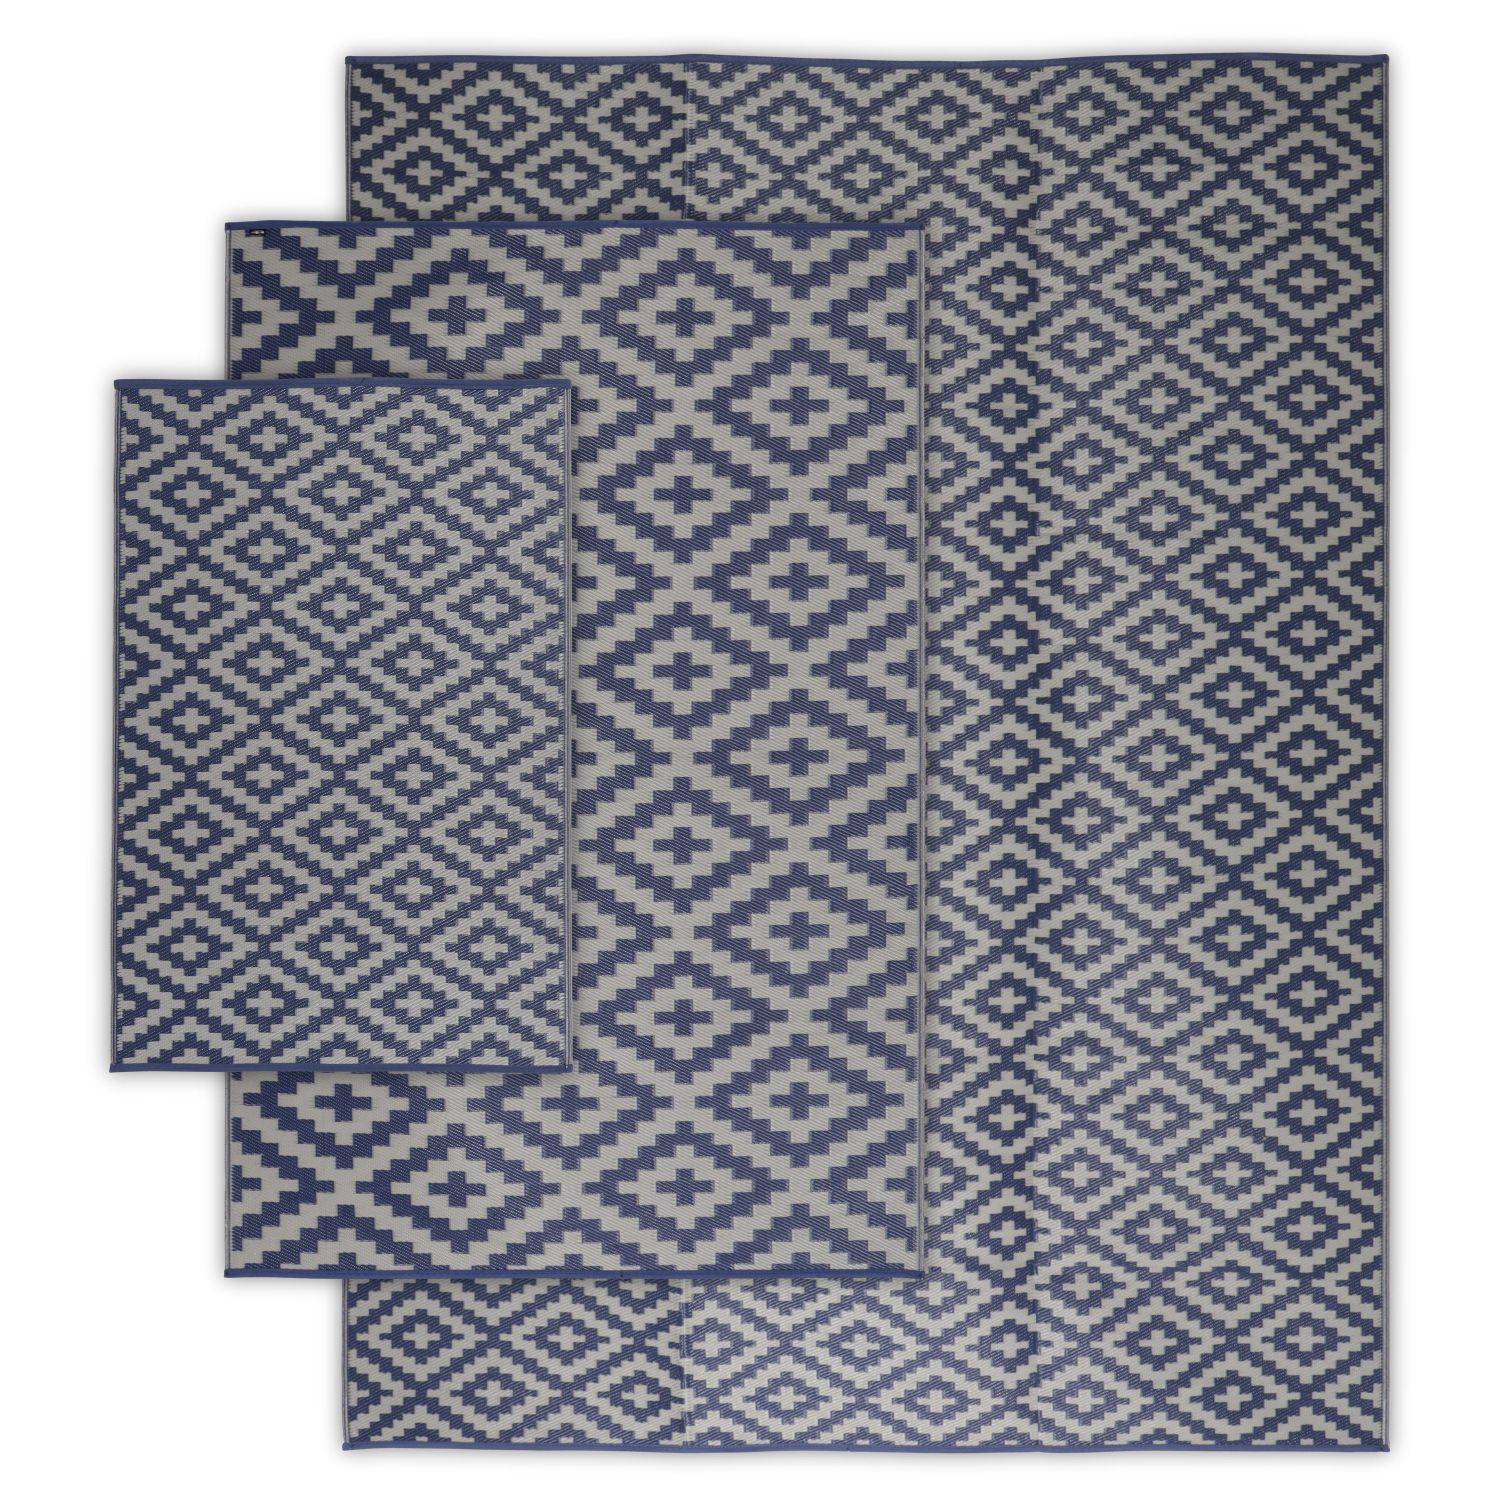 Tapis d’extérieur 270x360cm STOCKHOLM - Rectangulaire, motif losanges bleu / beige, jacquard, réversible, indoor / outdoor,,sweeek,Photo5